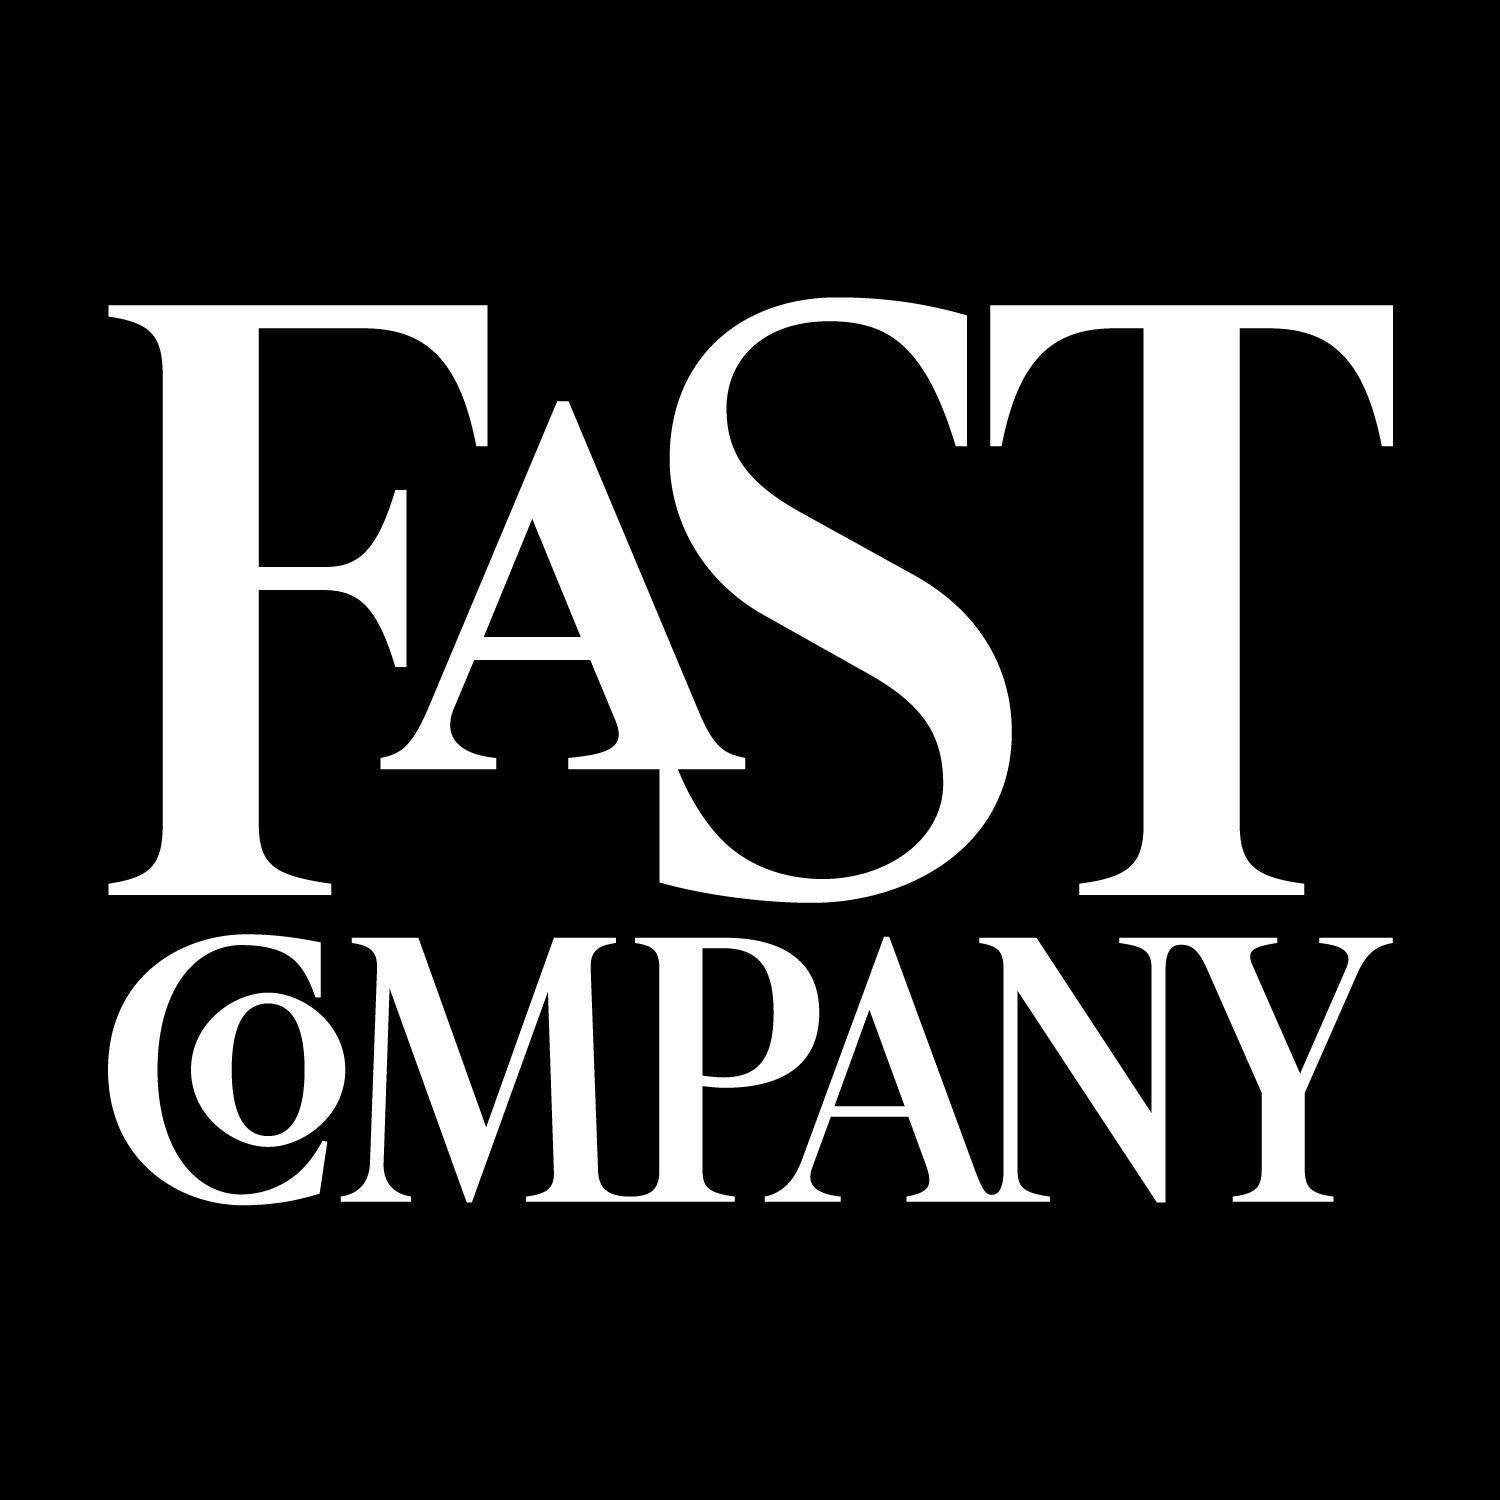 Black Company Logo - Fast Company logo white black stacked